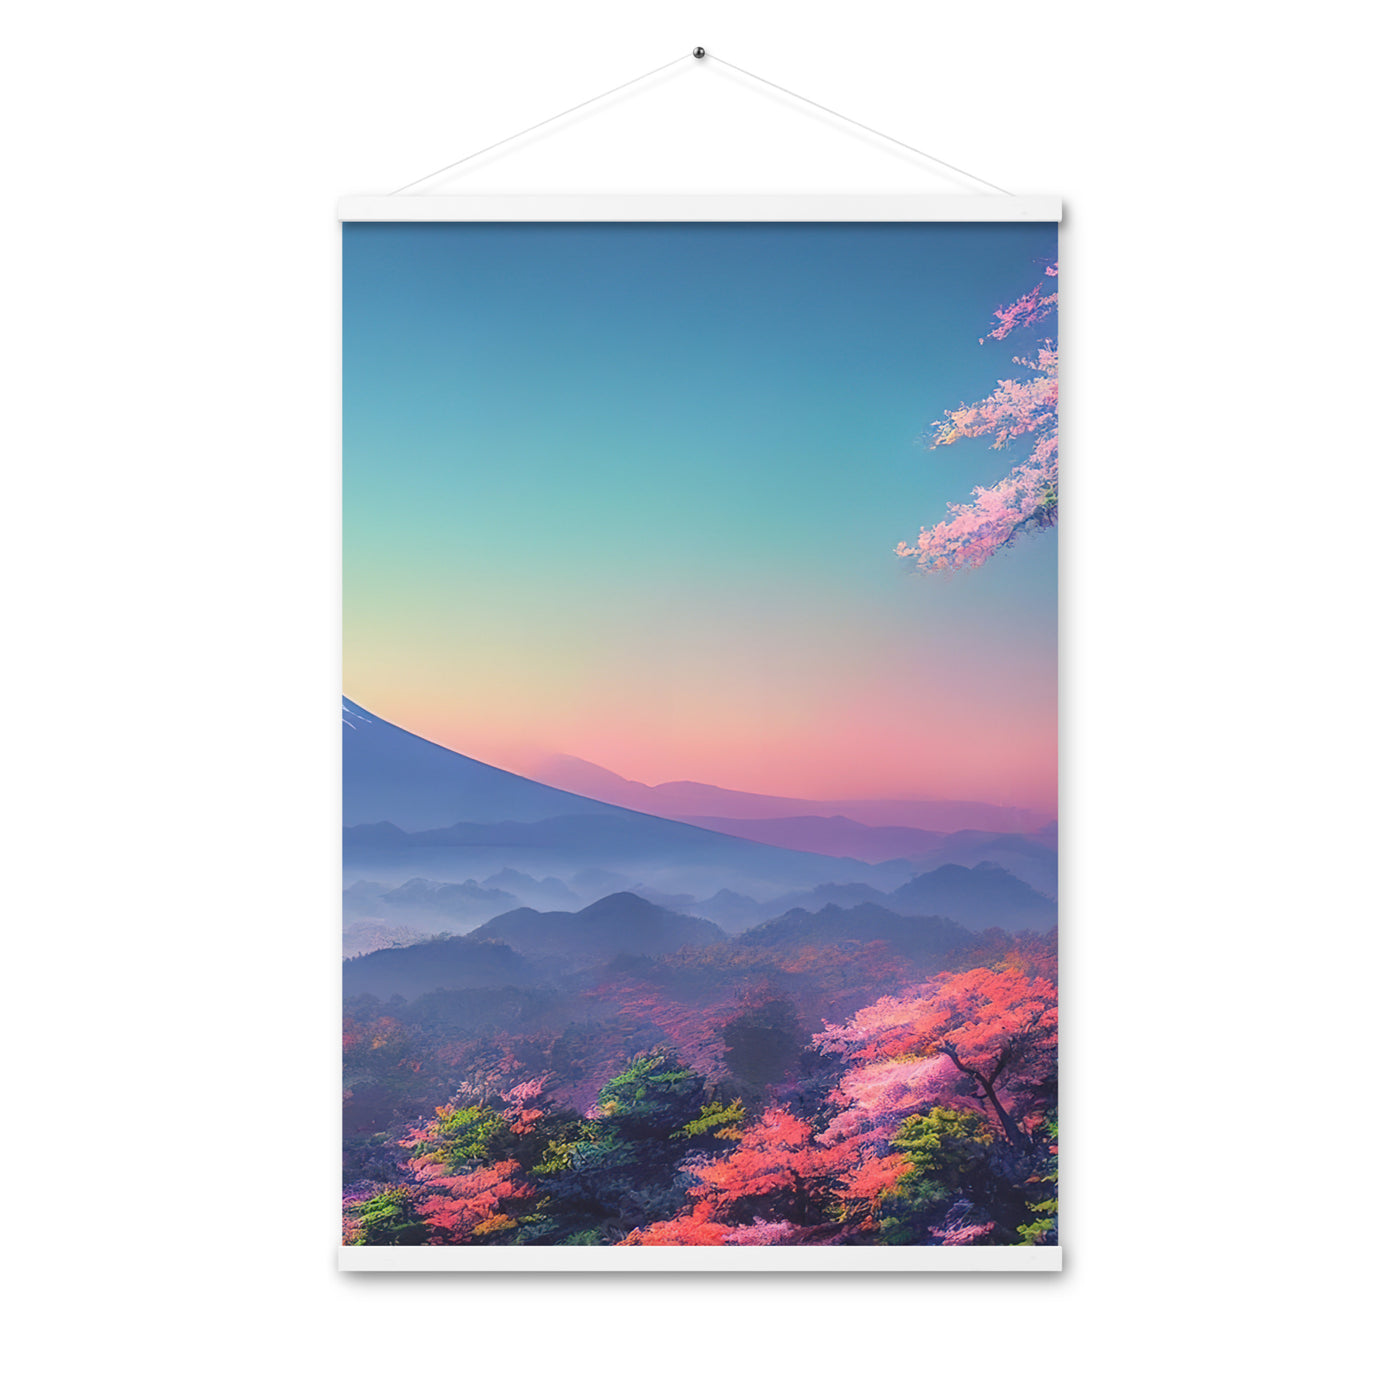 Berg und Wald mit pinken Bäumen - Landschaftsmalerei - Premium Poster mit Aufhängung berge xxx Weiß 61 x 91.4 cm